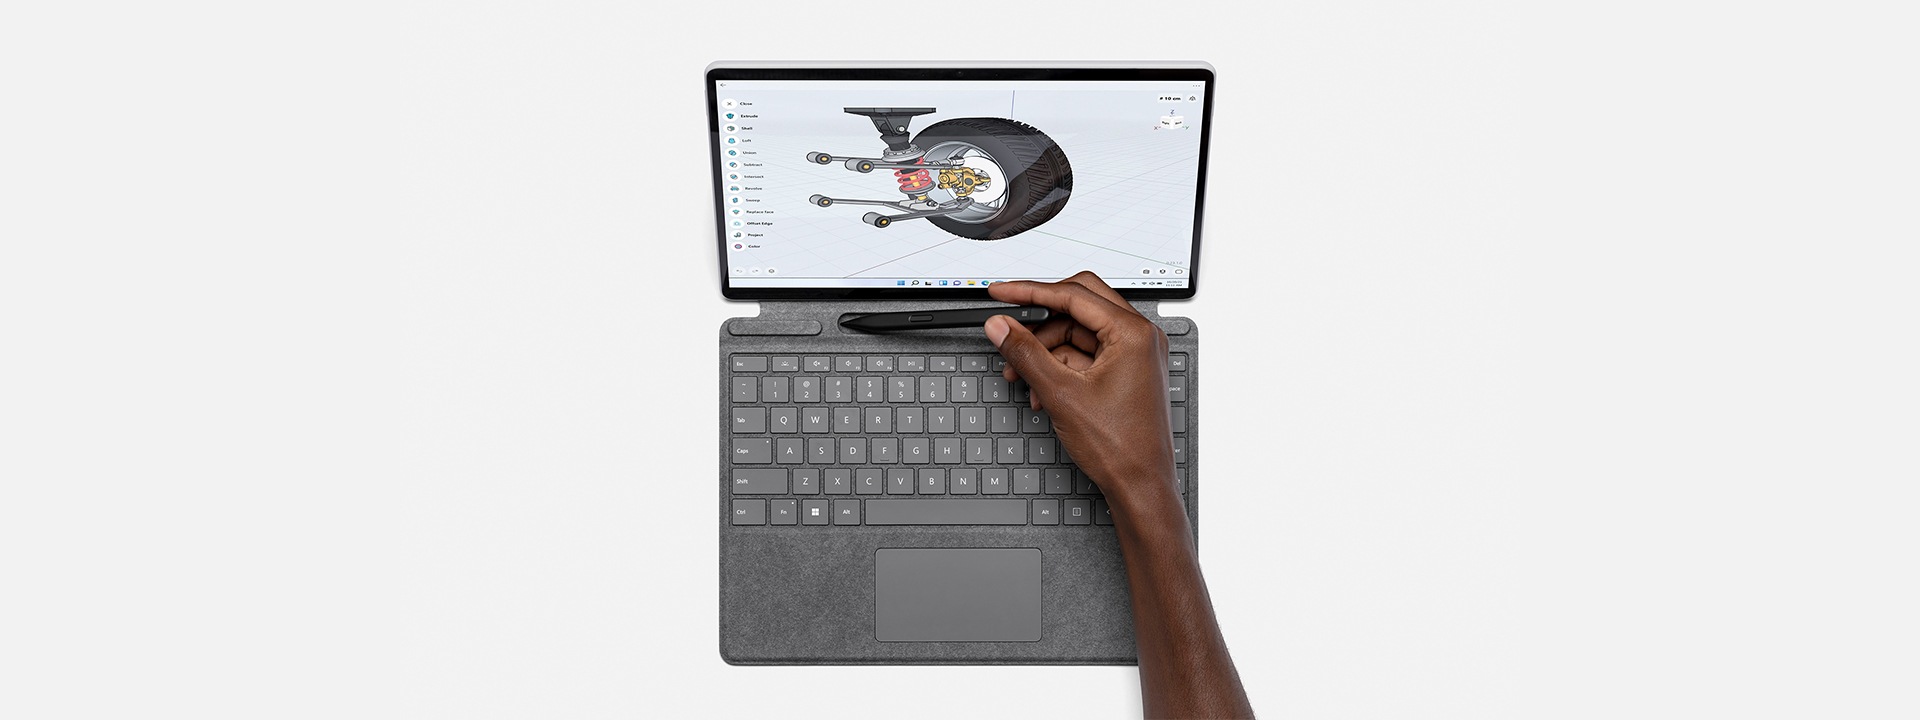 搭配使用 Surface Pro X 與 Surface 手寫筆來使用 Shapr3D。